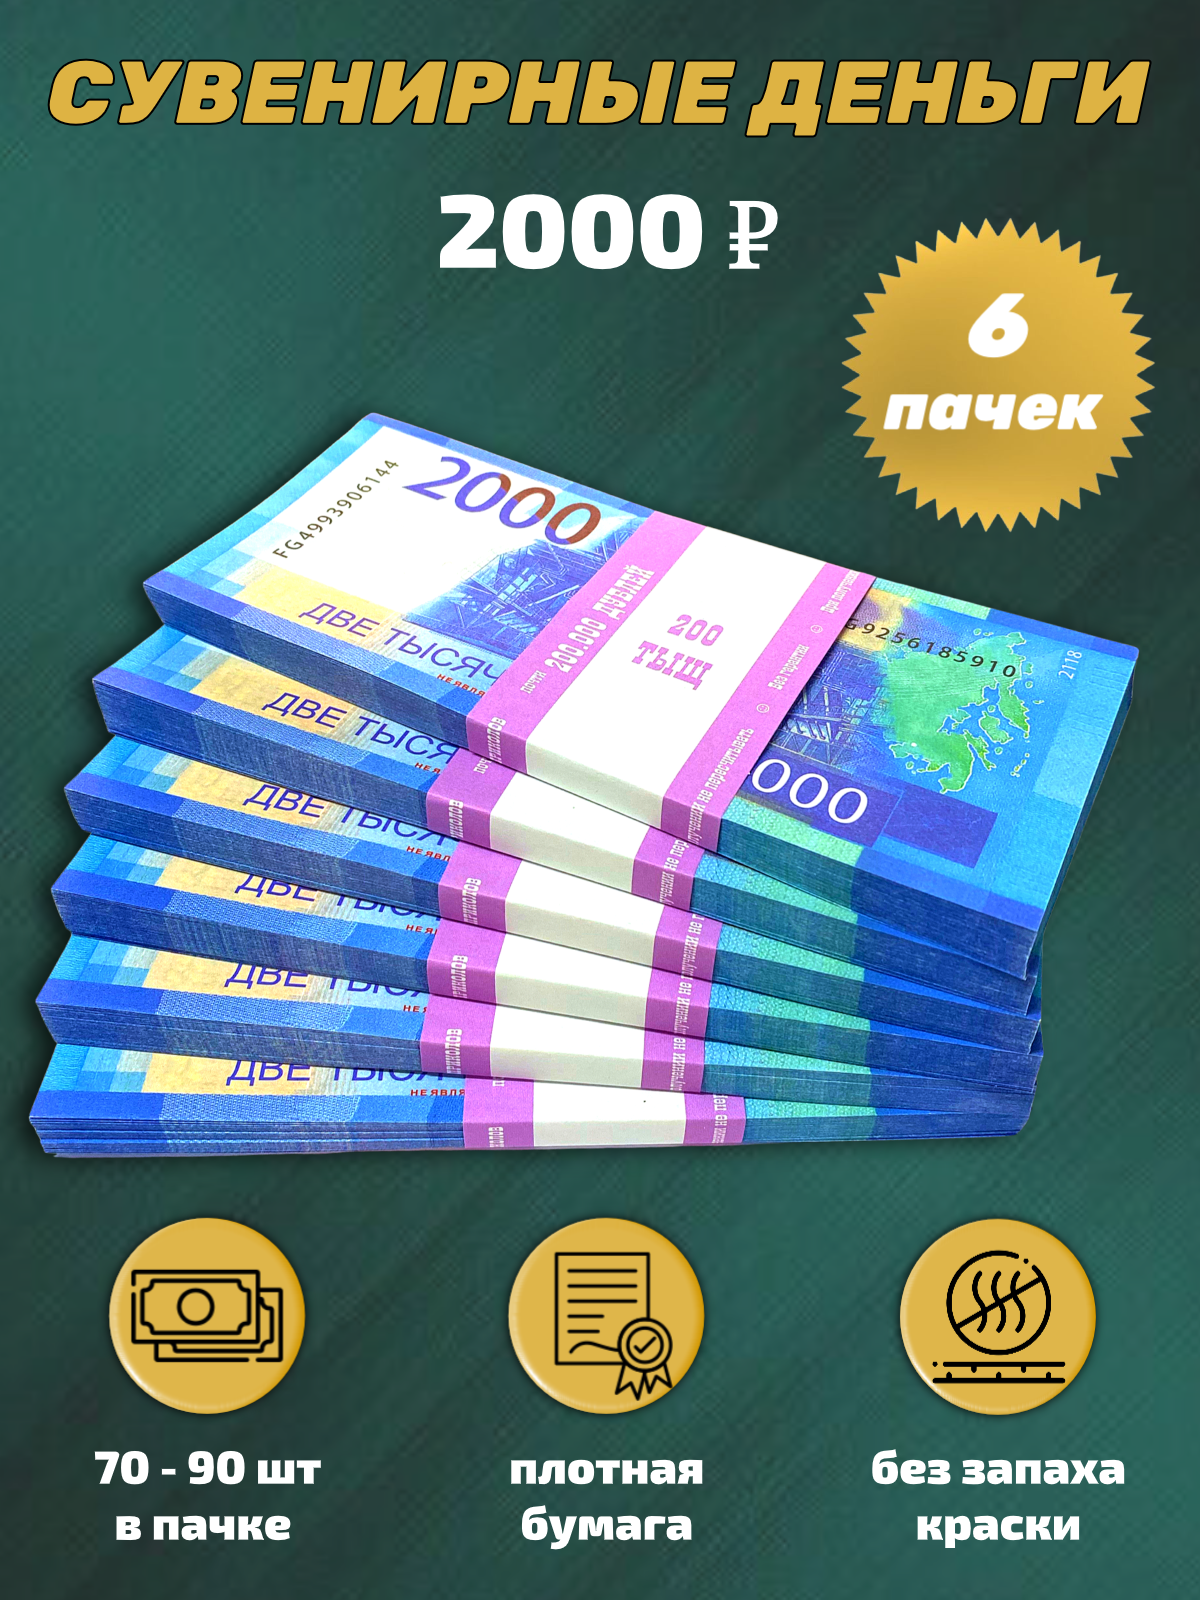 Сувенирные деньги, набор 2000 руб - 6 пачек